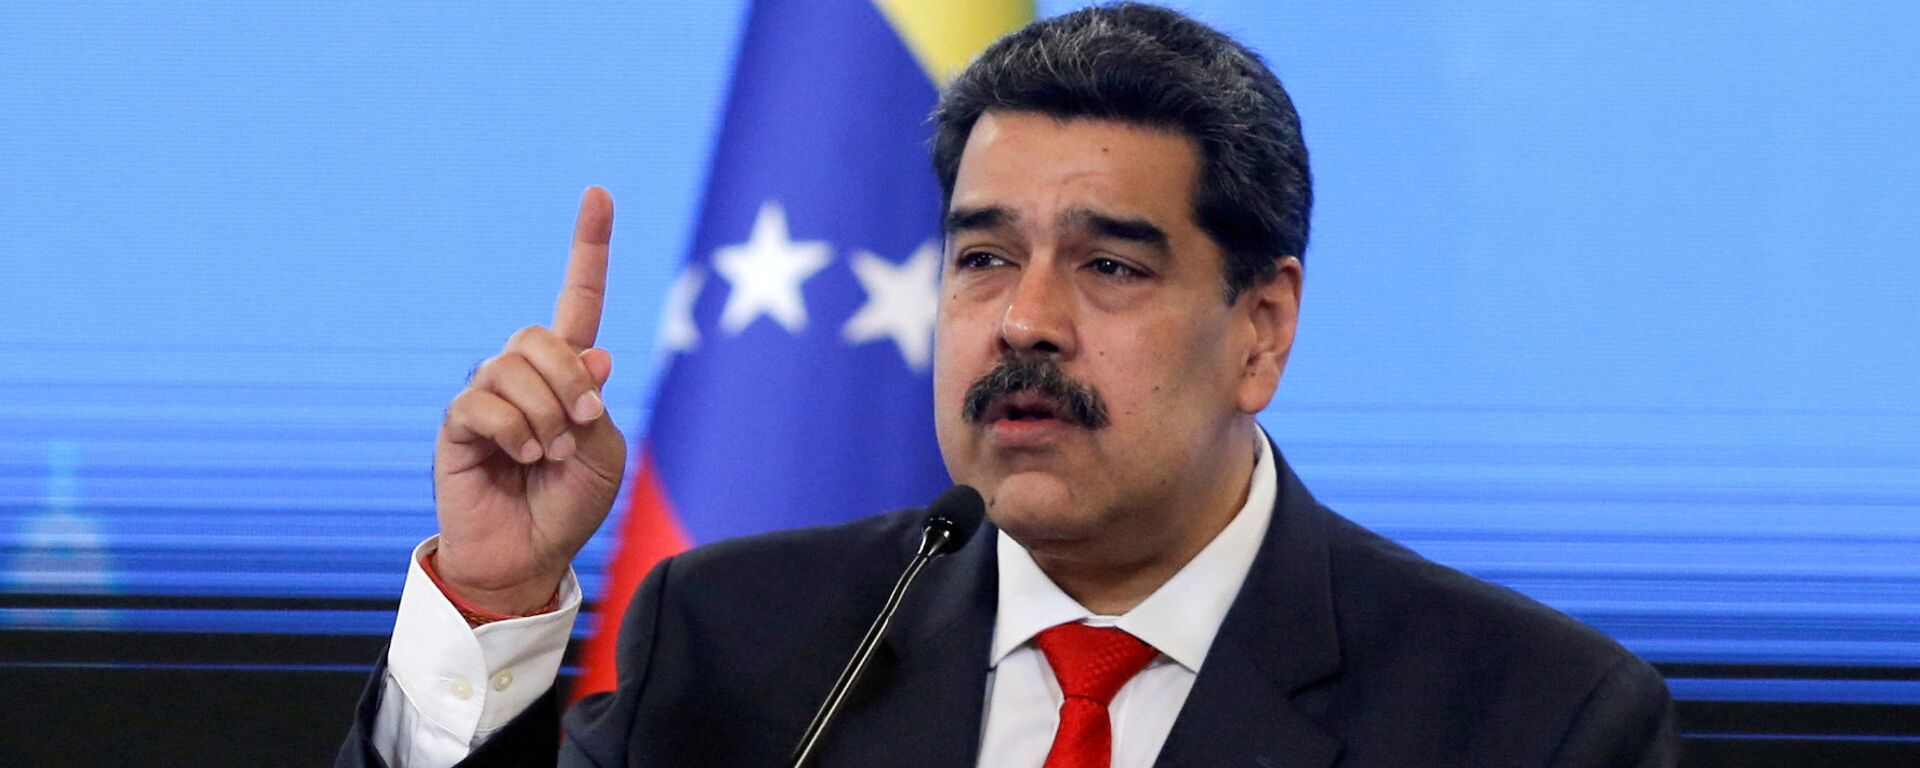 Nicolás Maduro, presidente de Venezuela - Sputnik Mundo, 1920, 02.05.2021